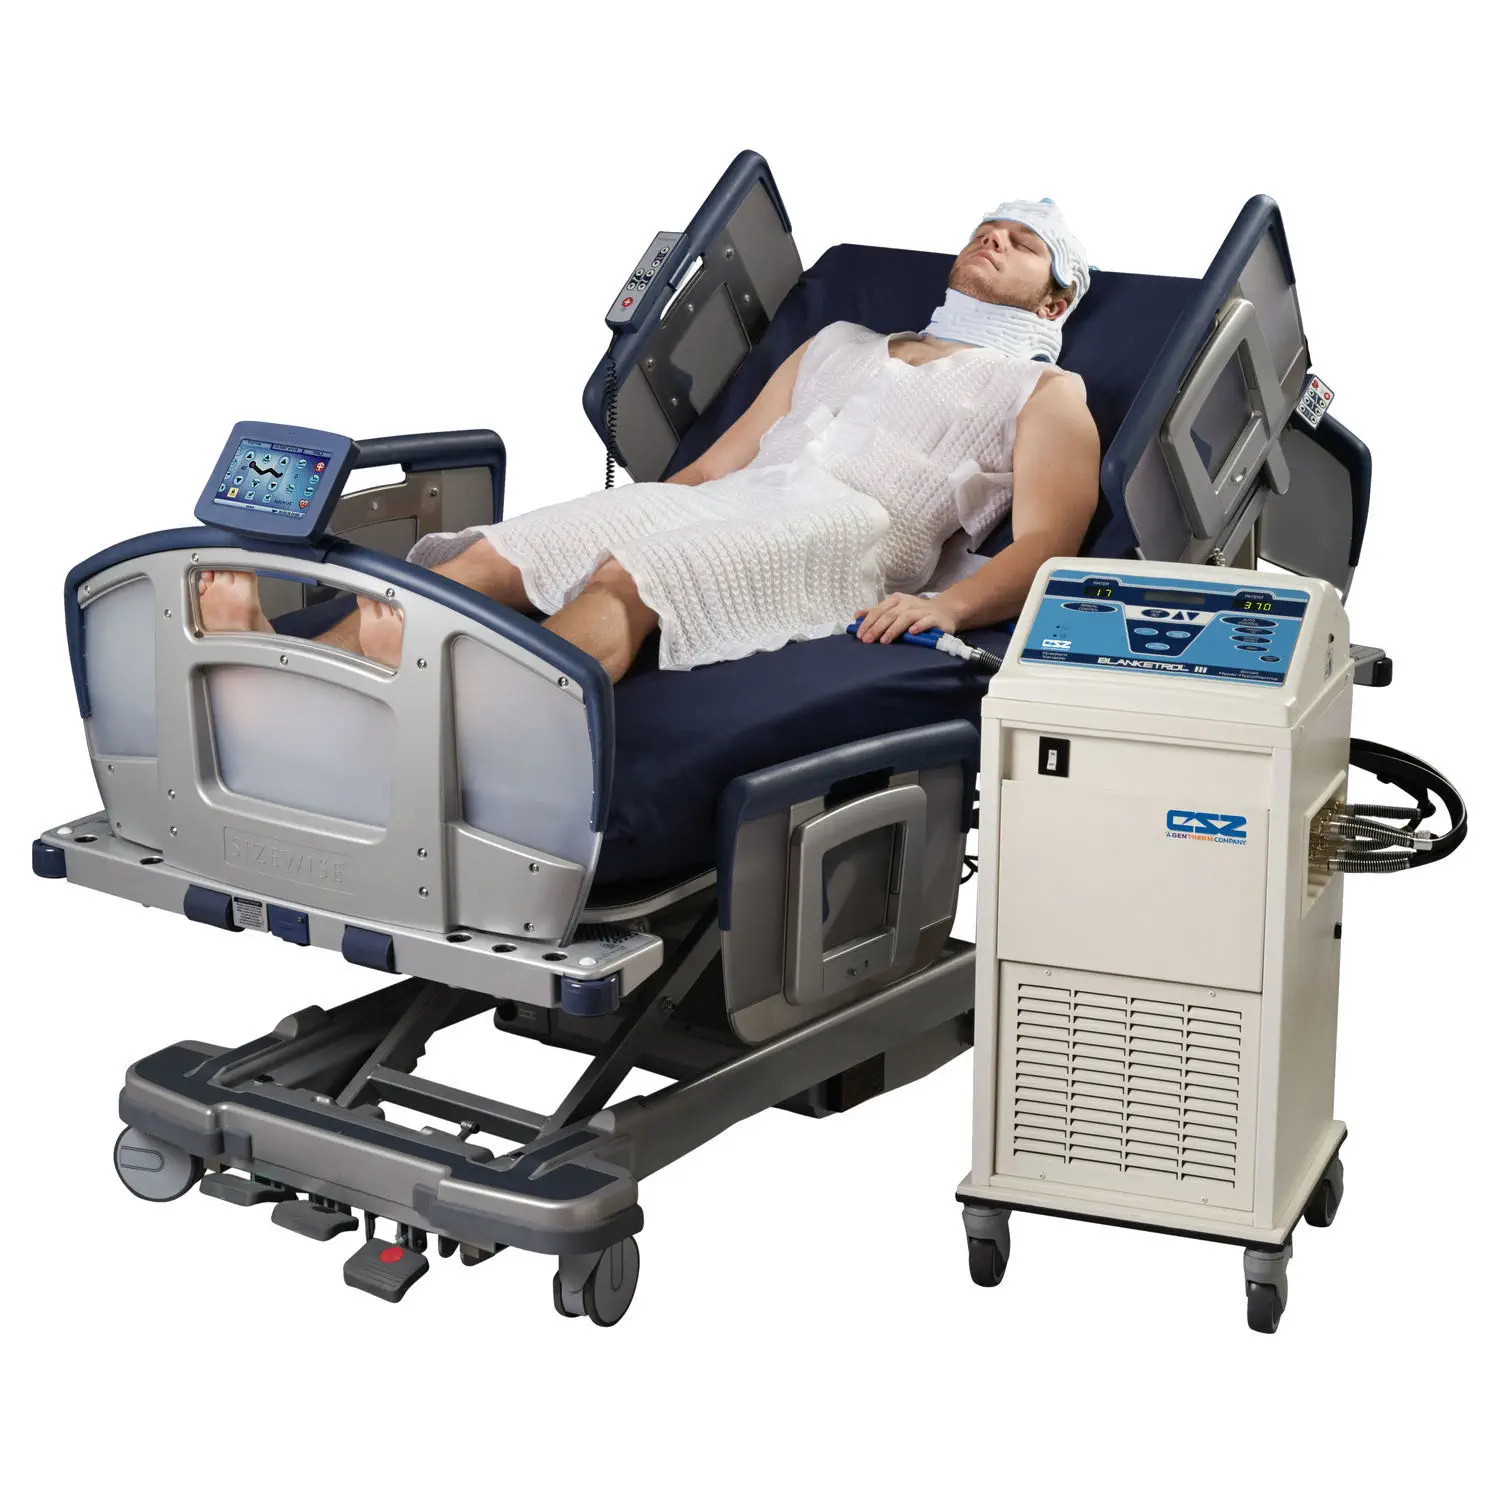 เครื่องรักษาด้วยความเย็น พร้อมเครื่องติดตามการทำงานของคลื่นสมอง  Monitoring patient cooling system Kool-Kit®  Gentherm Medical